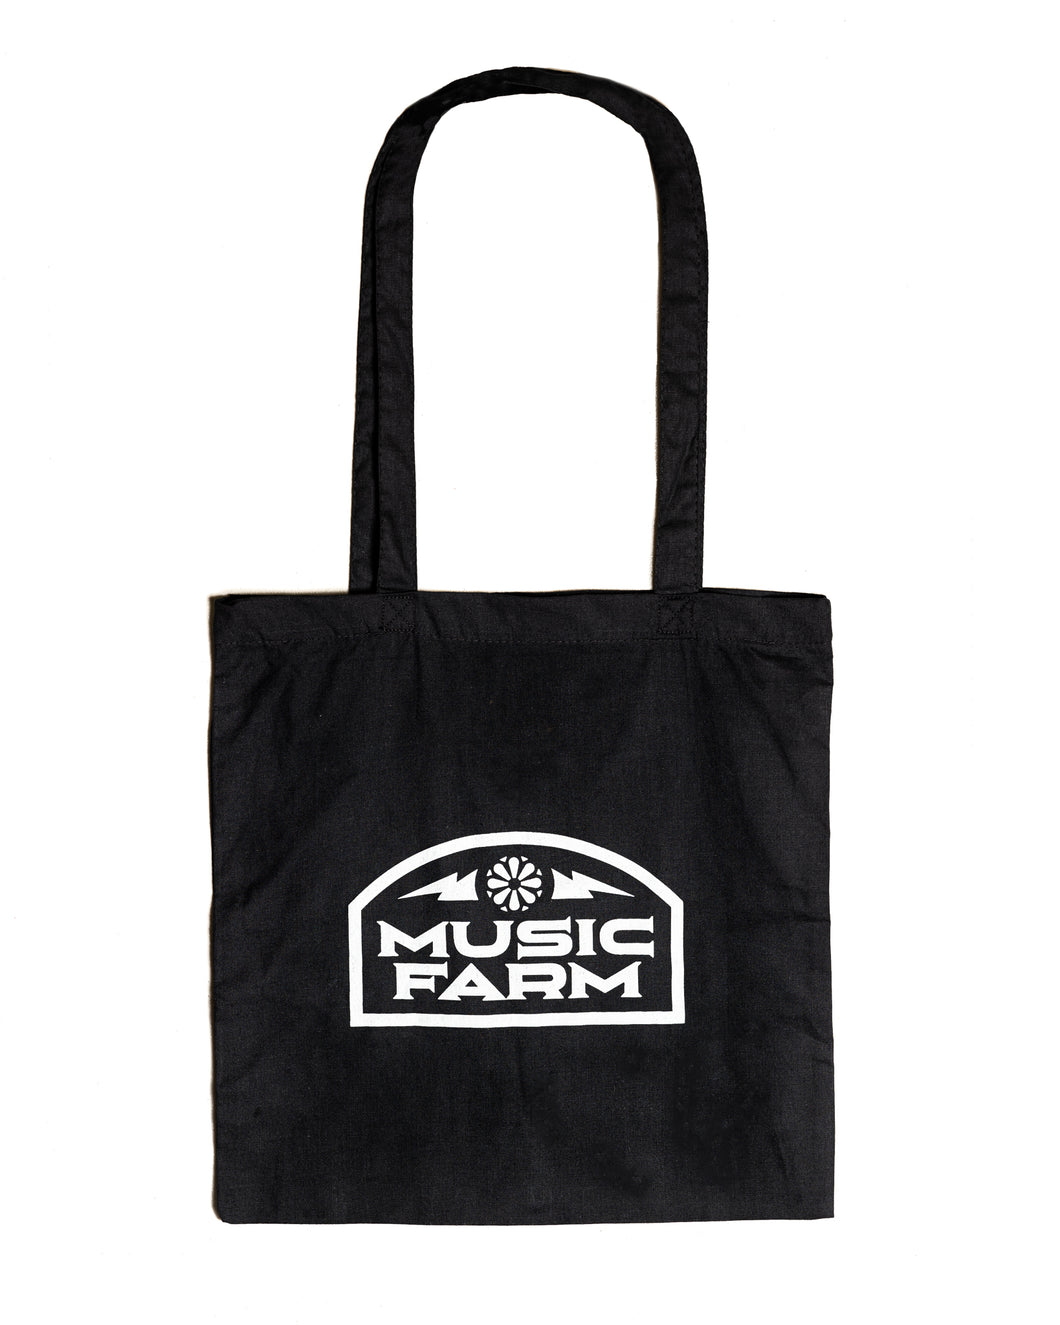 Music Farm Tote Bag